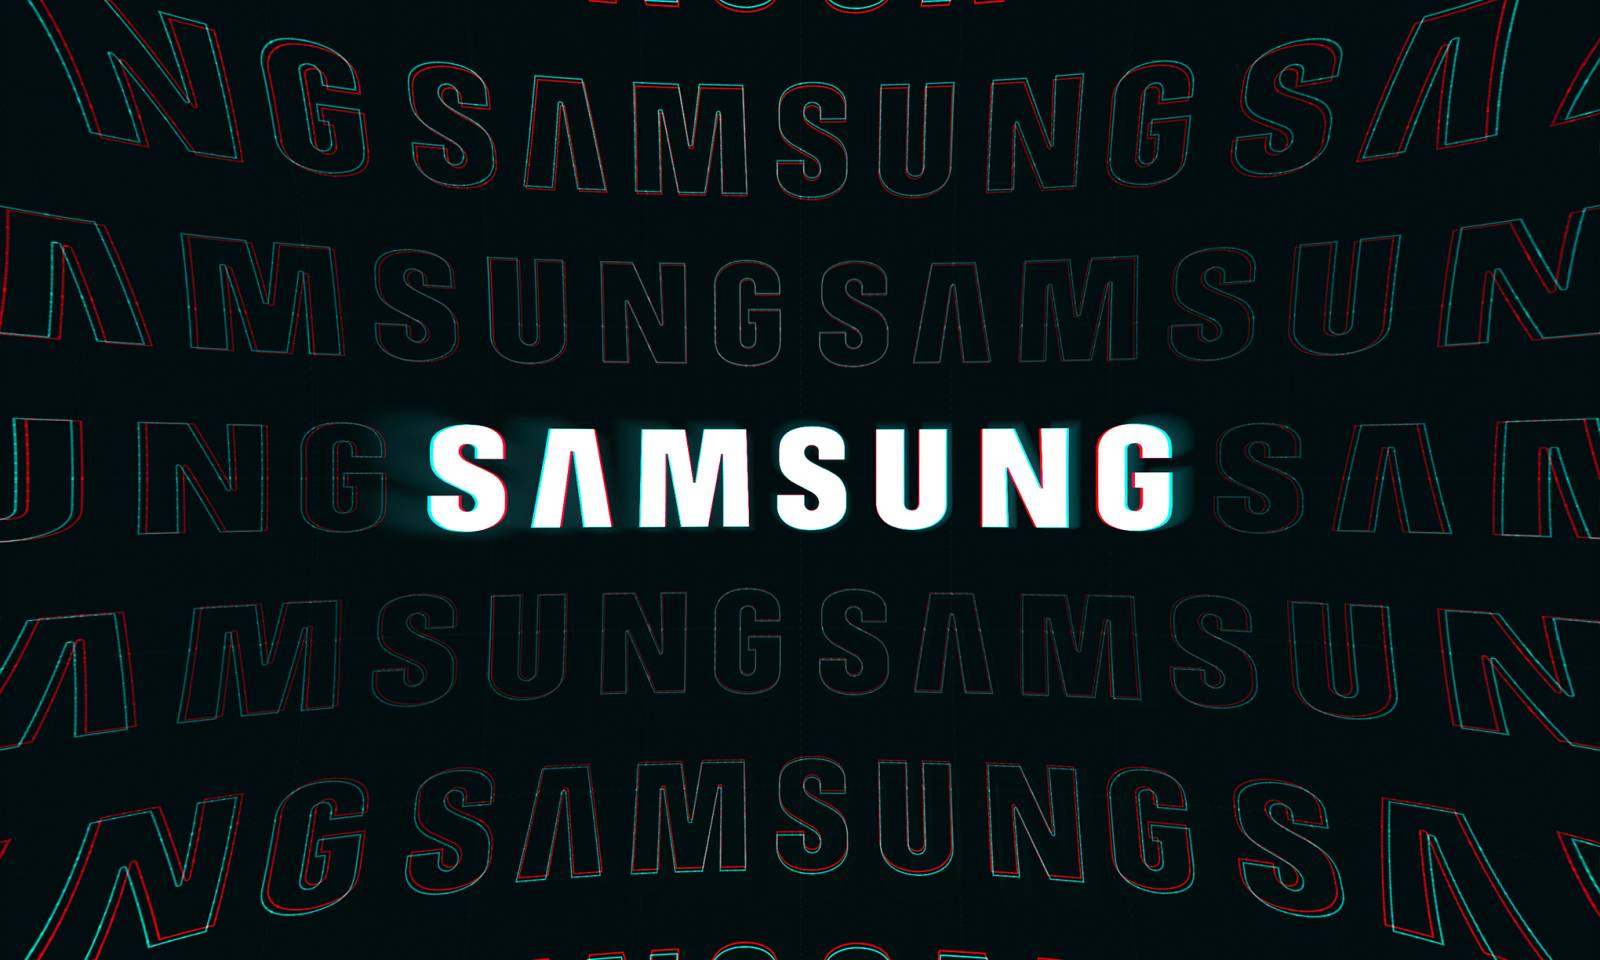 Samsung average